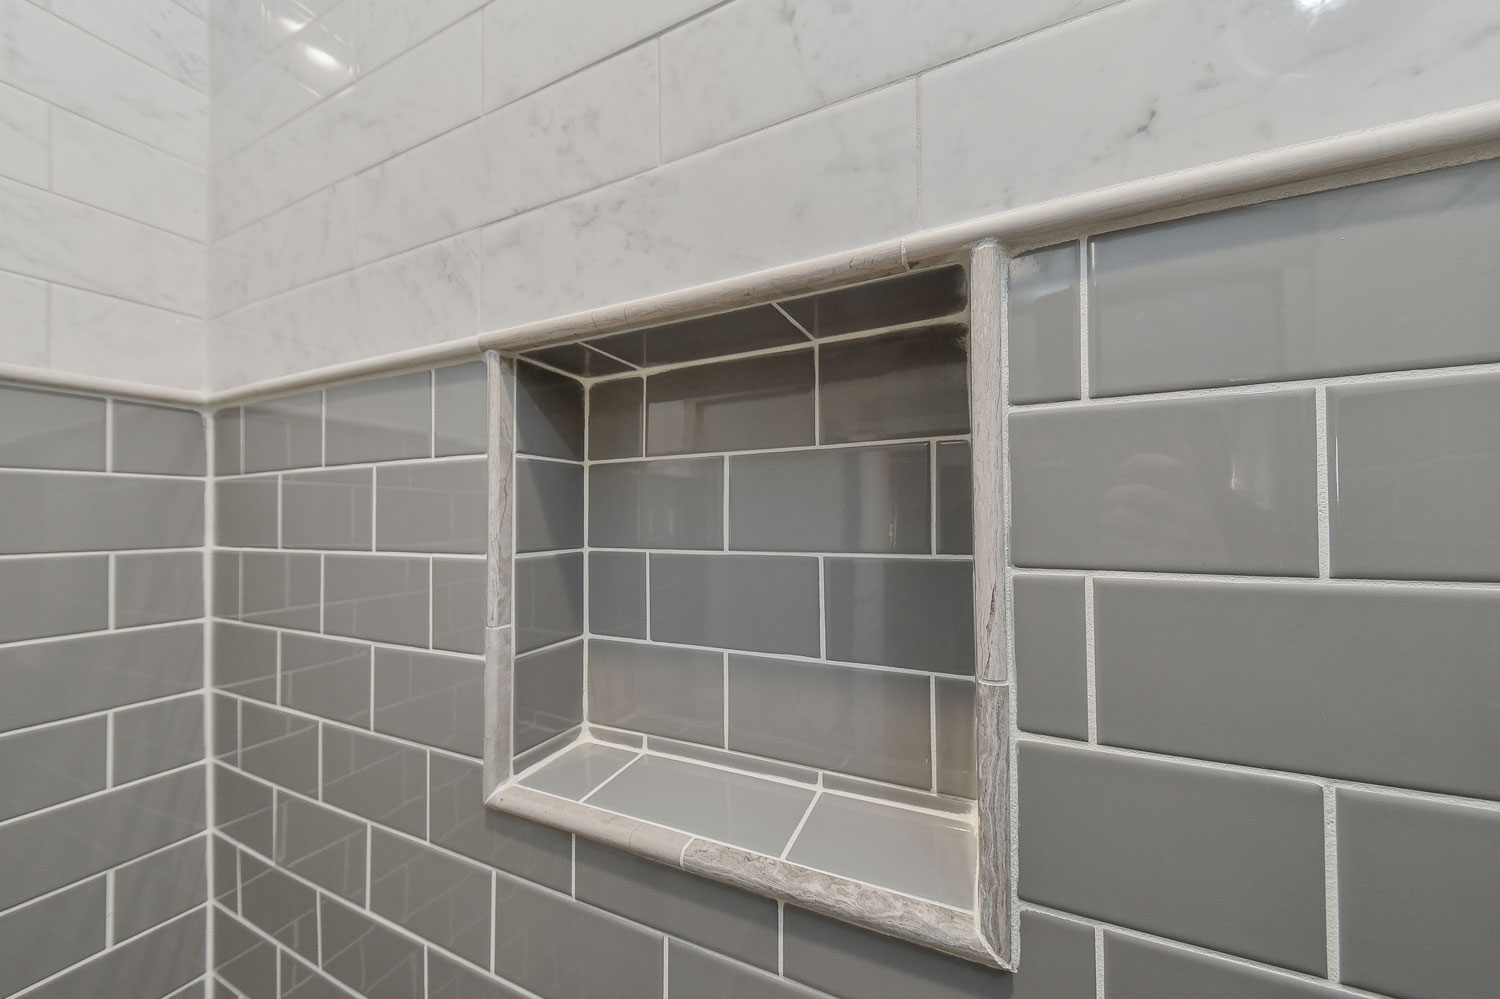 Naperville Basement Bathroom Remodeling Project - Sebring Design Build